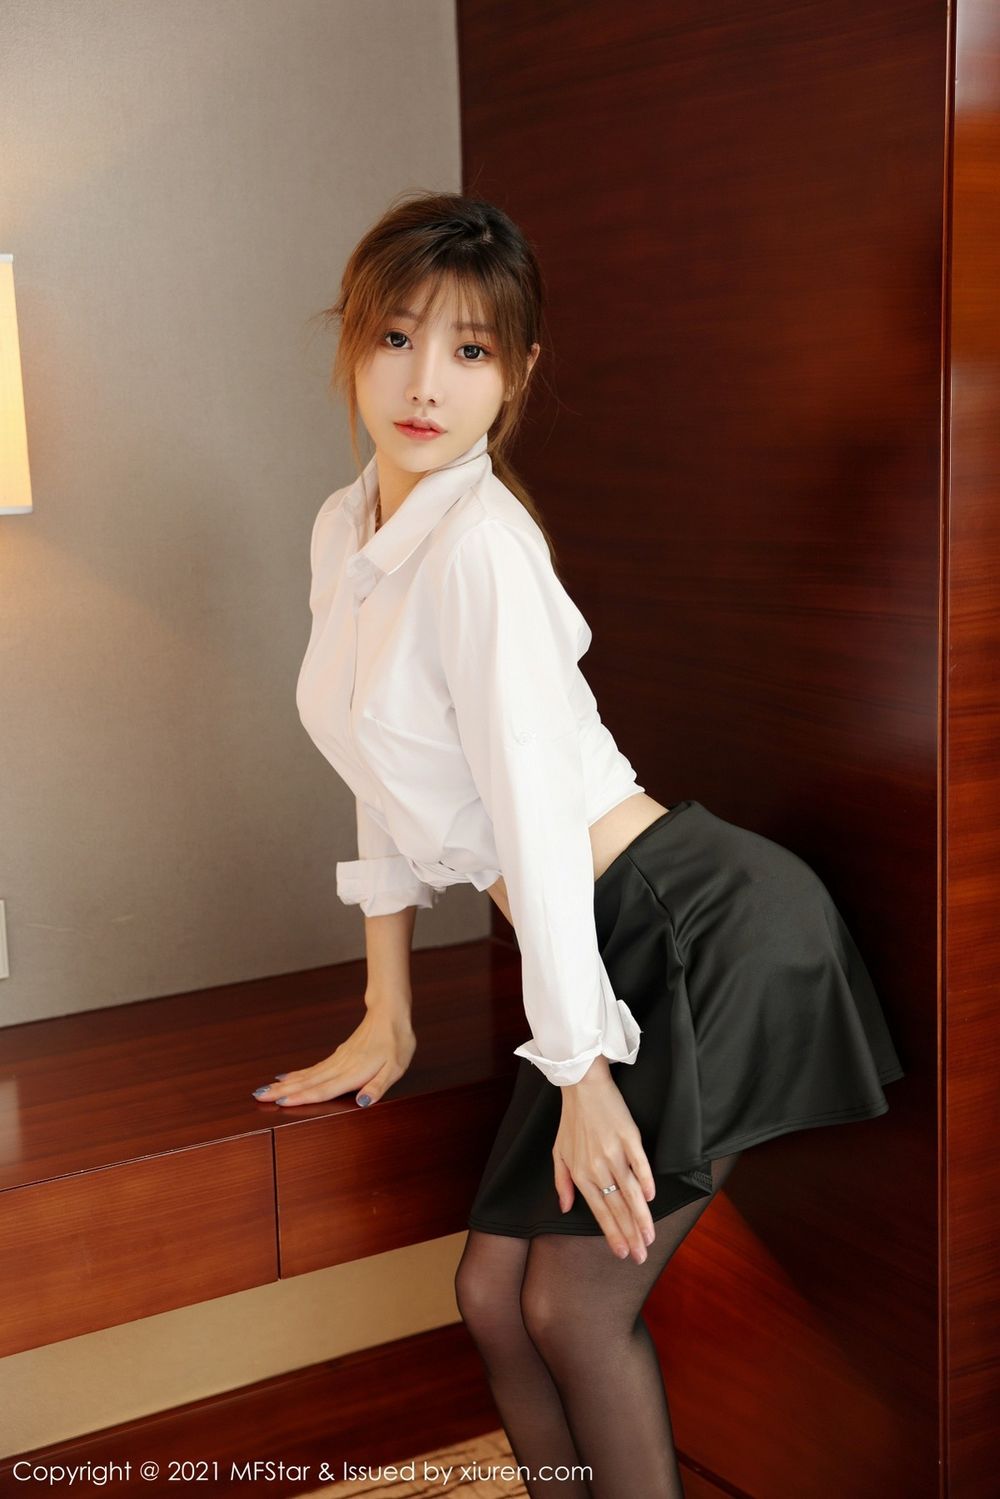 新人模特李颖煊baby白衬衫黑丝美腿OL系列首套写真